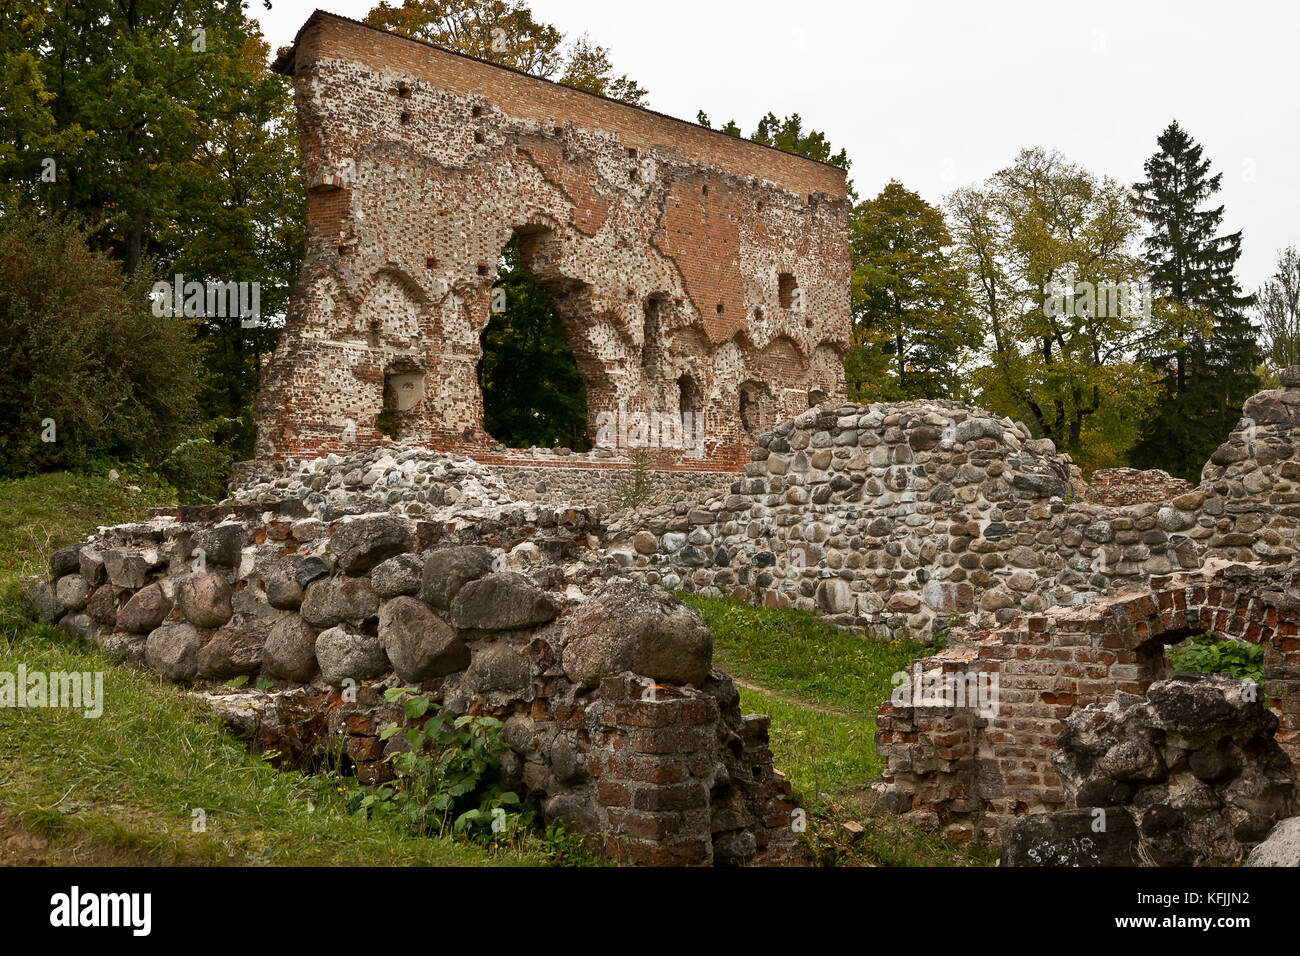 Viljandi rovine del castello, Estonia Foto Stock